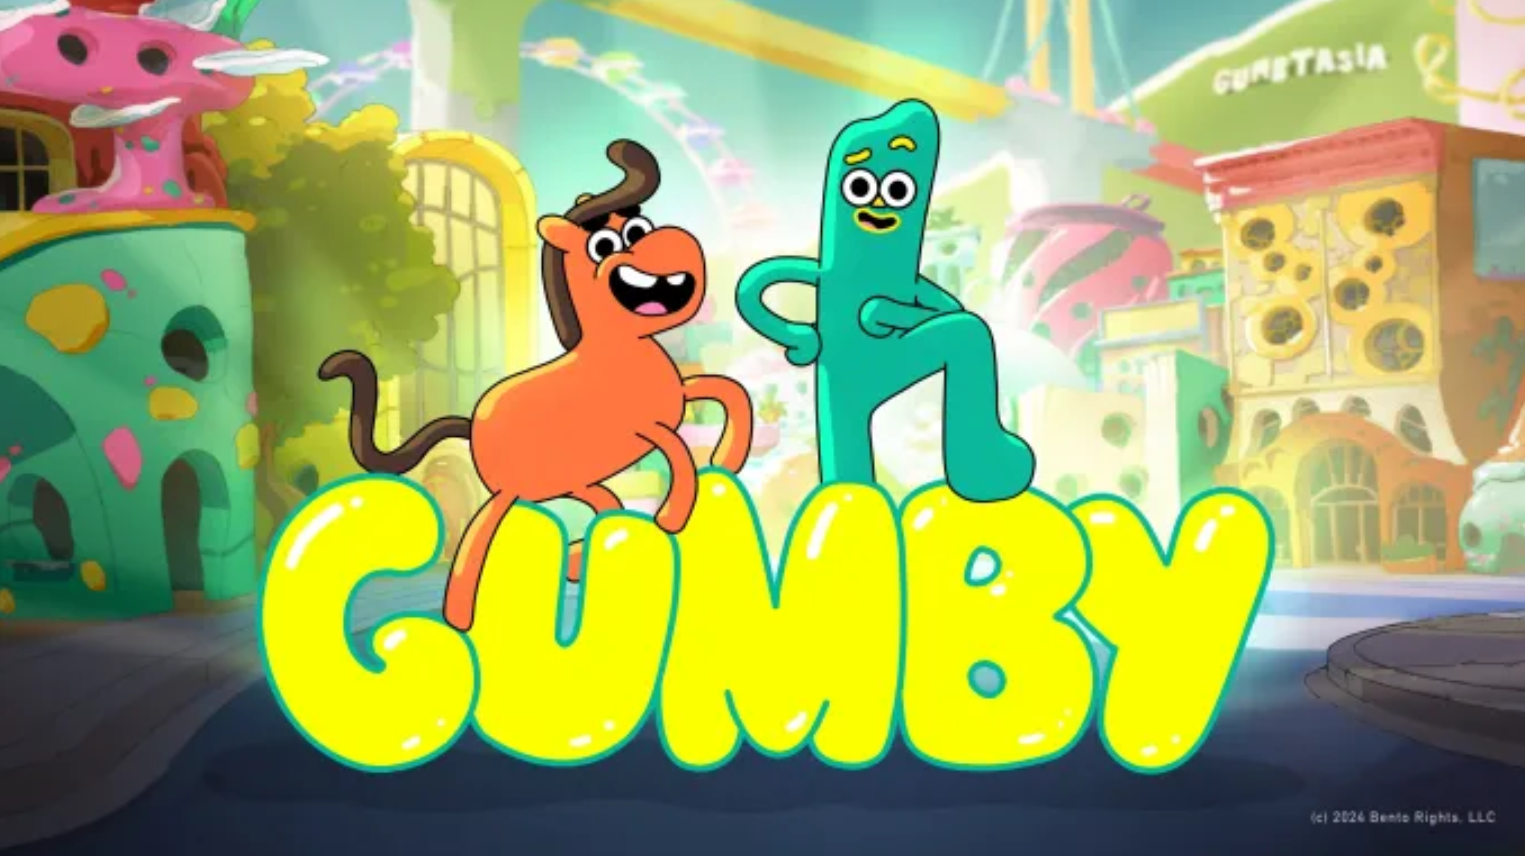 Шоу Gumby для детей и взрослых в разработке, просмотрите изображение первого взгляда